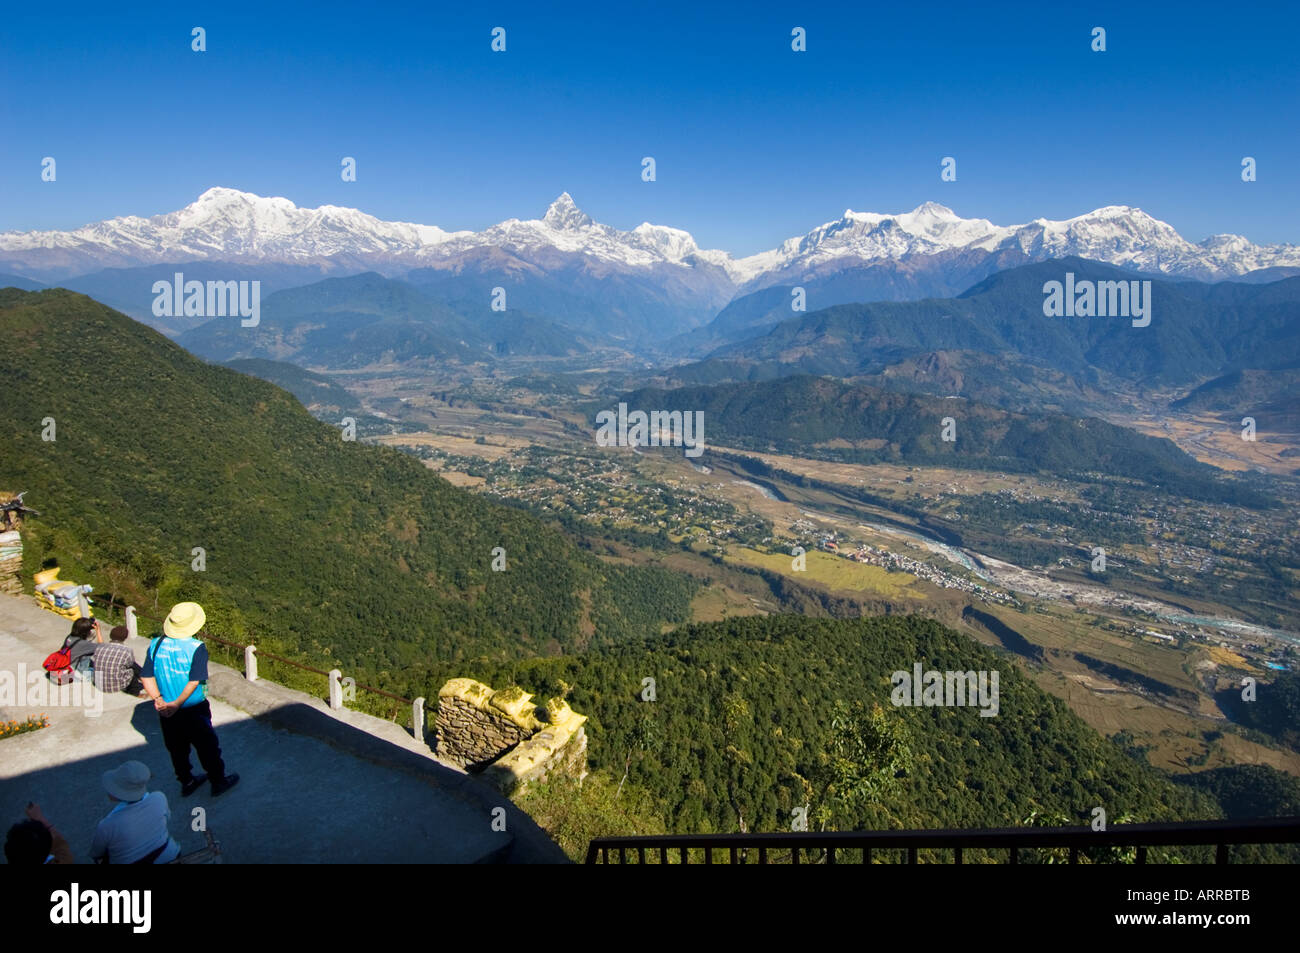 Sarangkot Pokhara à Outlook la sainte montagne Machhapuchare panorama himalayen vallée de Katmandou NÉPAL ANNAPURNA region Asie Banque D'Images